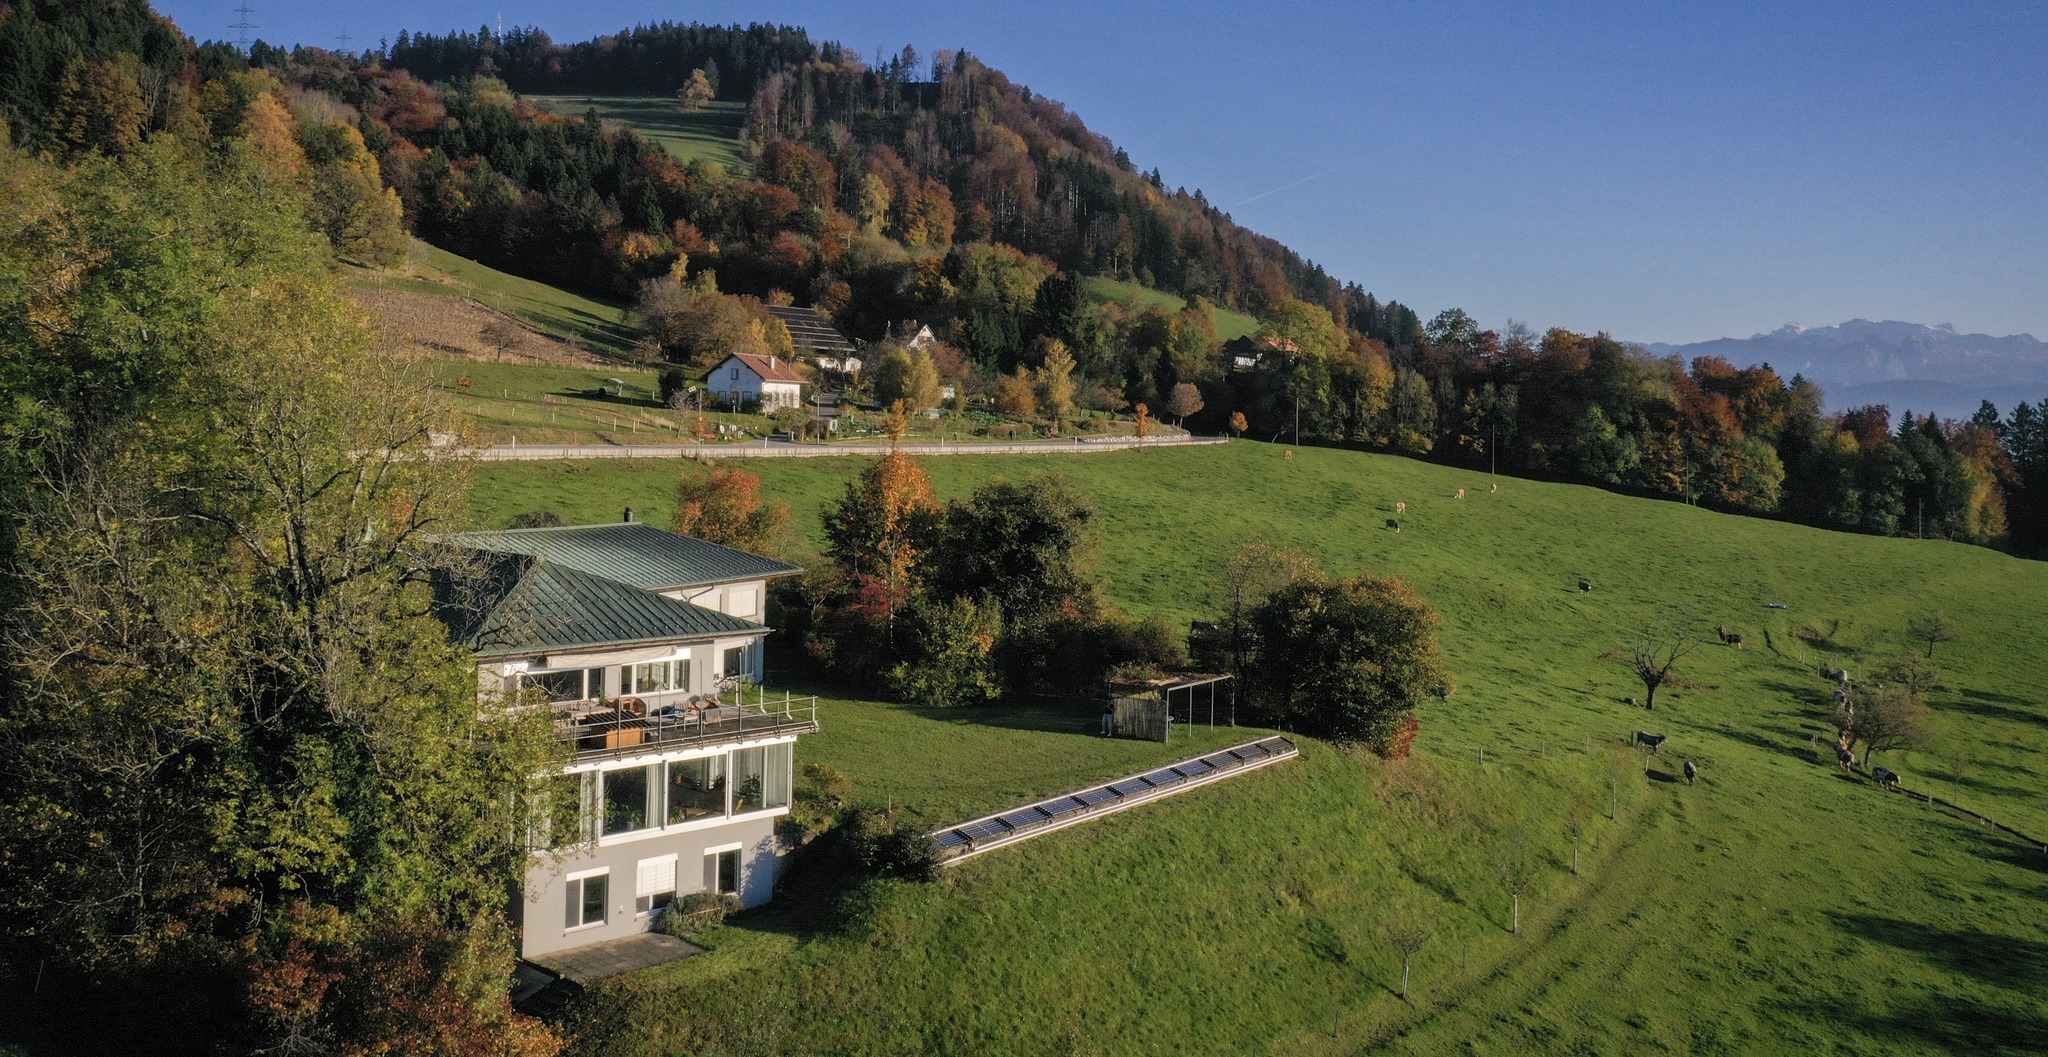 Das Bild zeigt den Blick auf grüne Wiesen, in der Mitte liegt das Übersetzerhaus Looren.